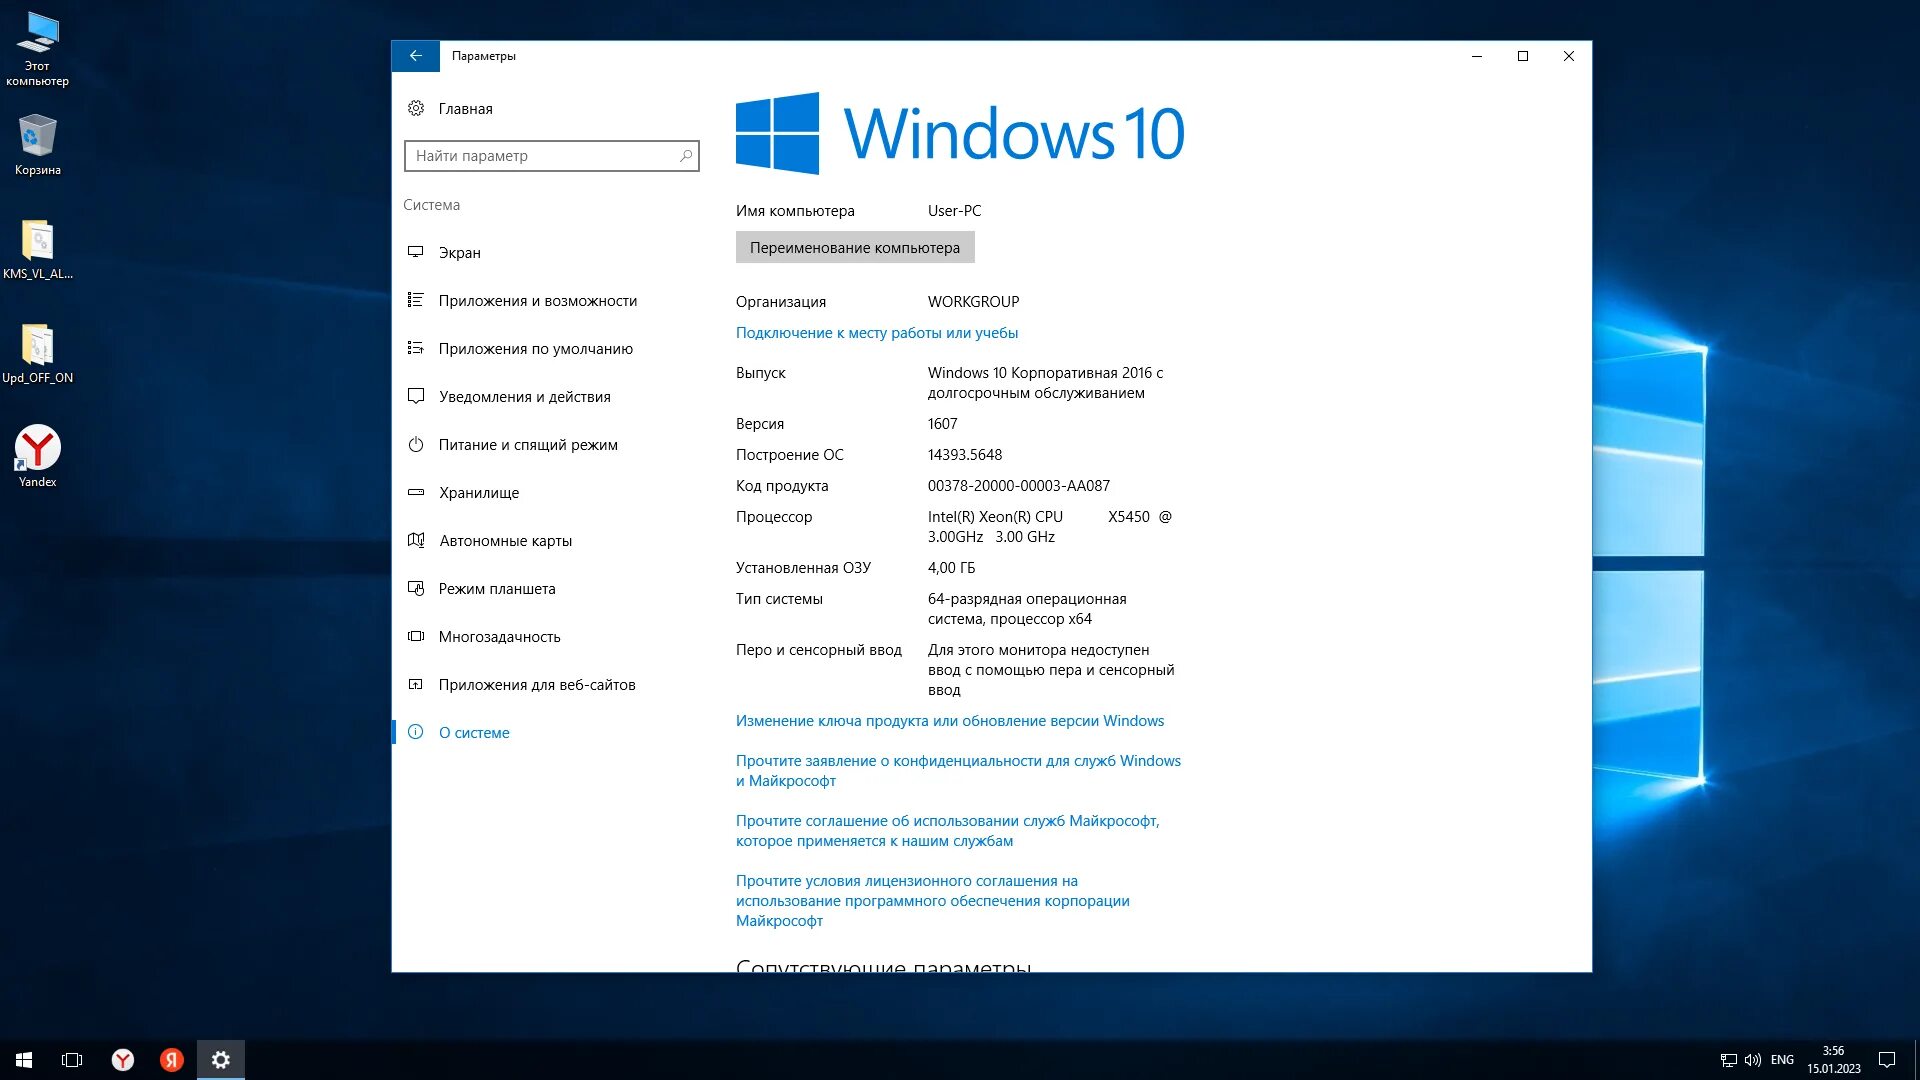 Легкая виндовс 10 64. Windows 10 версии. Windows 10 LTSB 1607 2016 x64 оригинальный. 64-Разрядная Операционная система, процессор x64. Редакции виндовс 10.